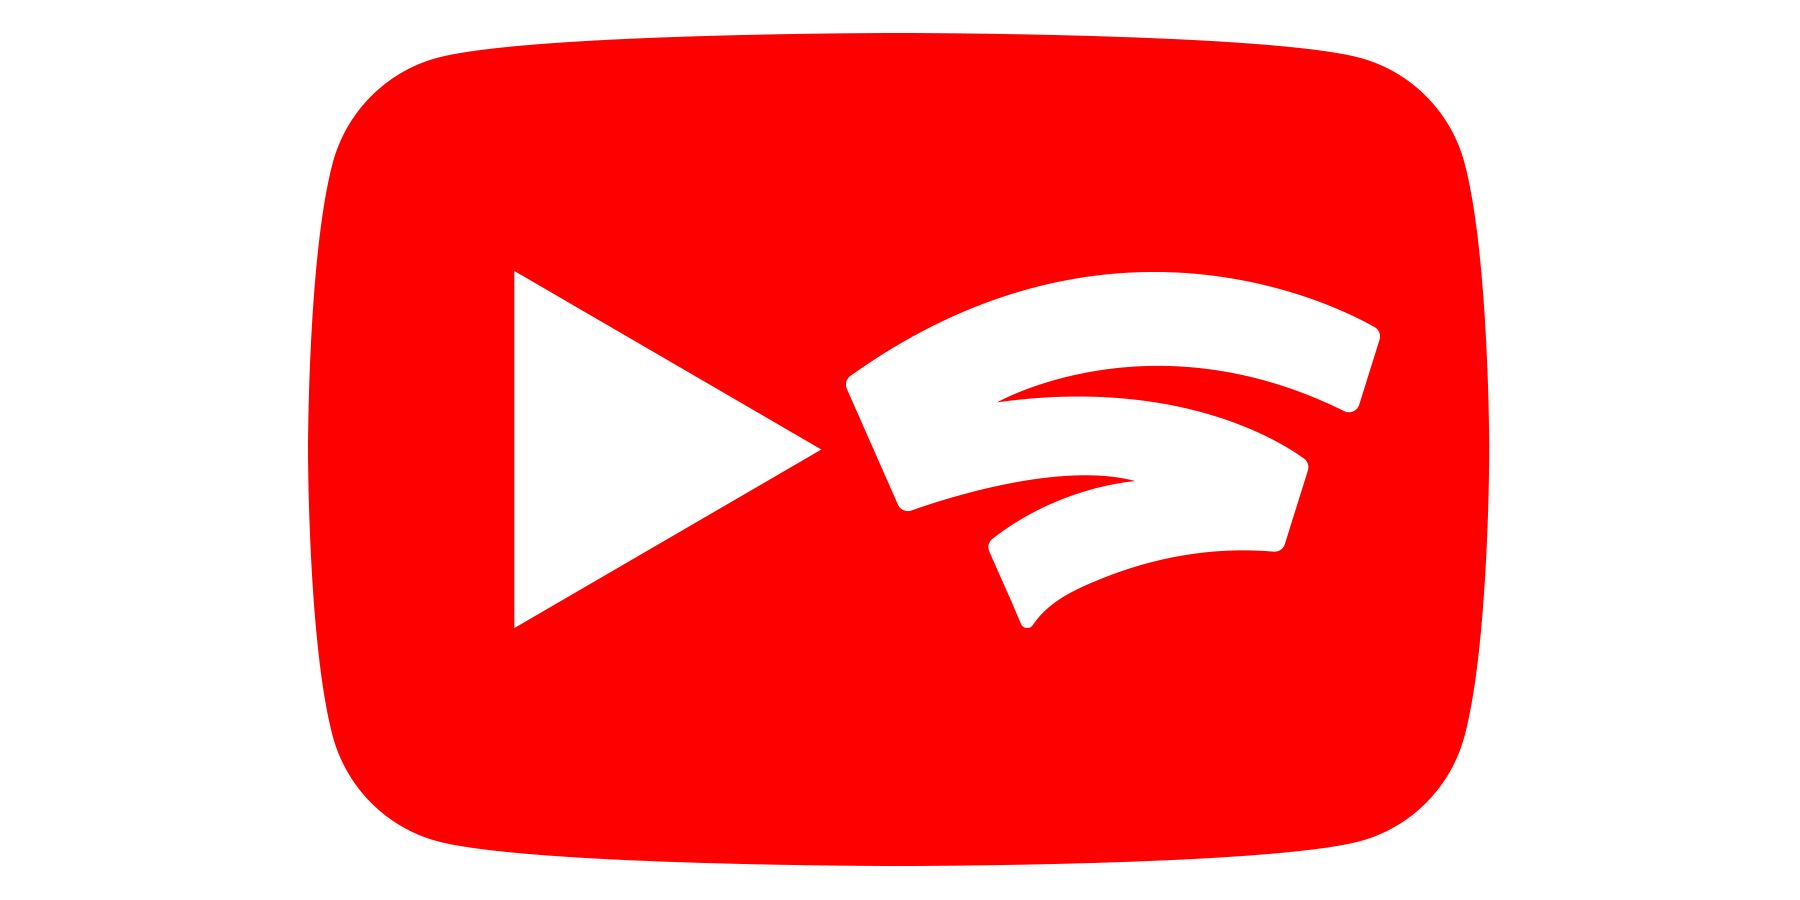 YouTube Google Stadia logos blended